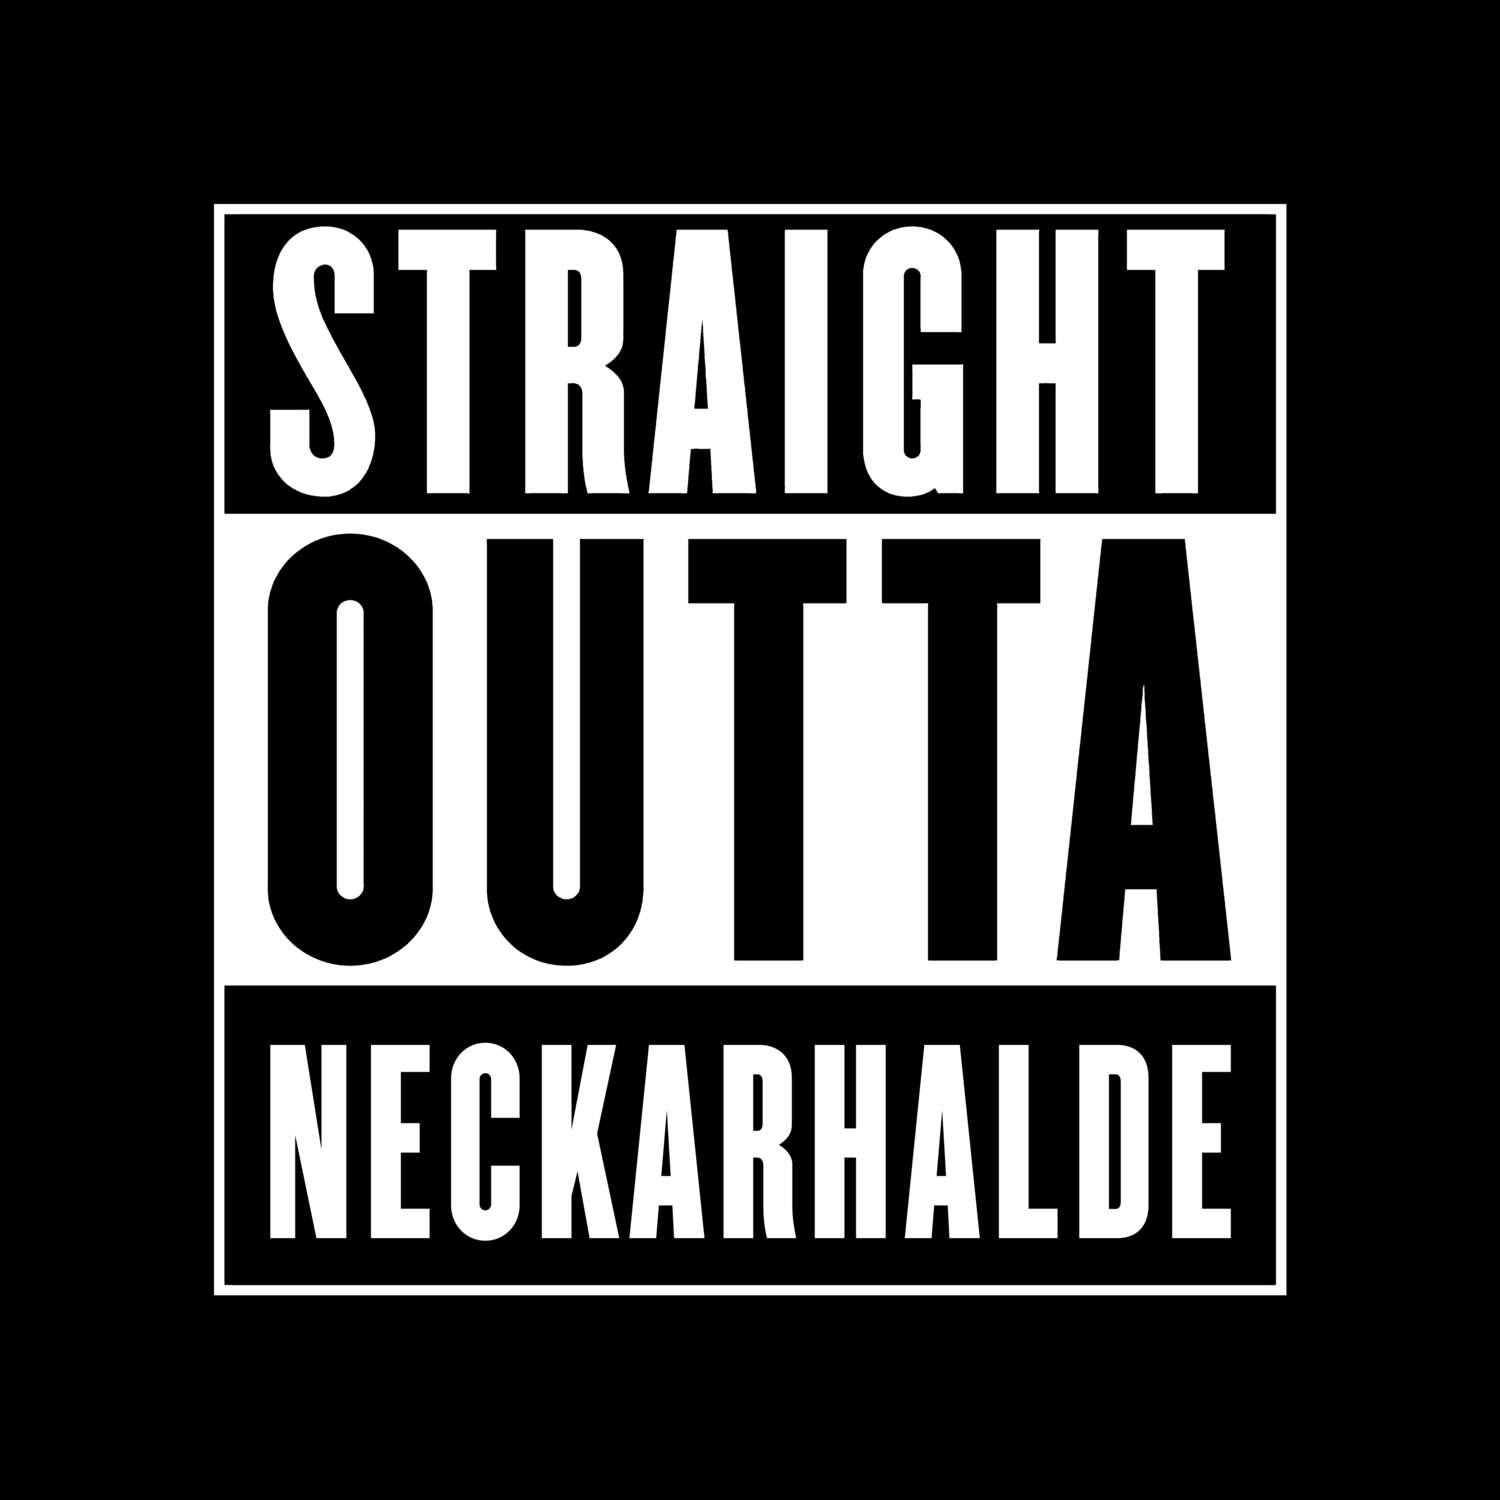 Neckarhalde T-Shirt »Straight Outta«